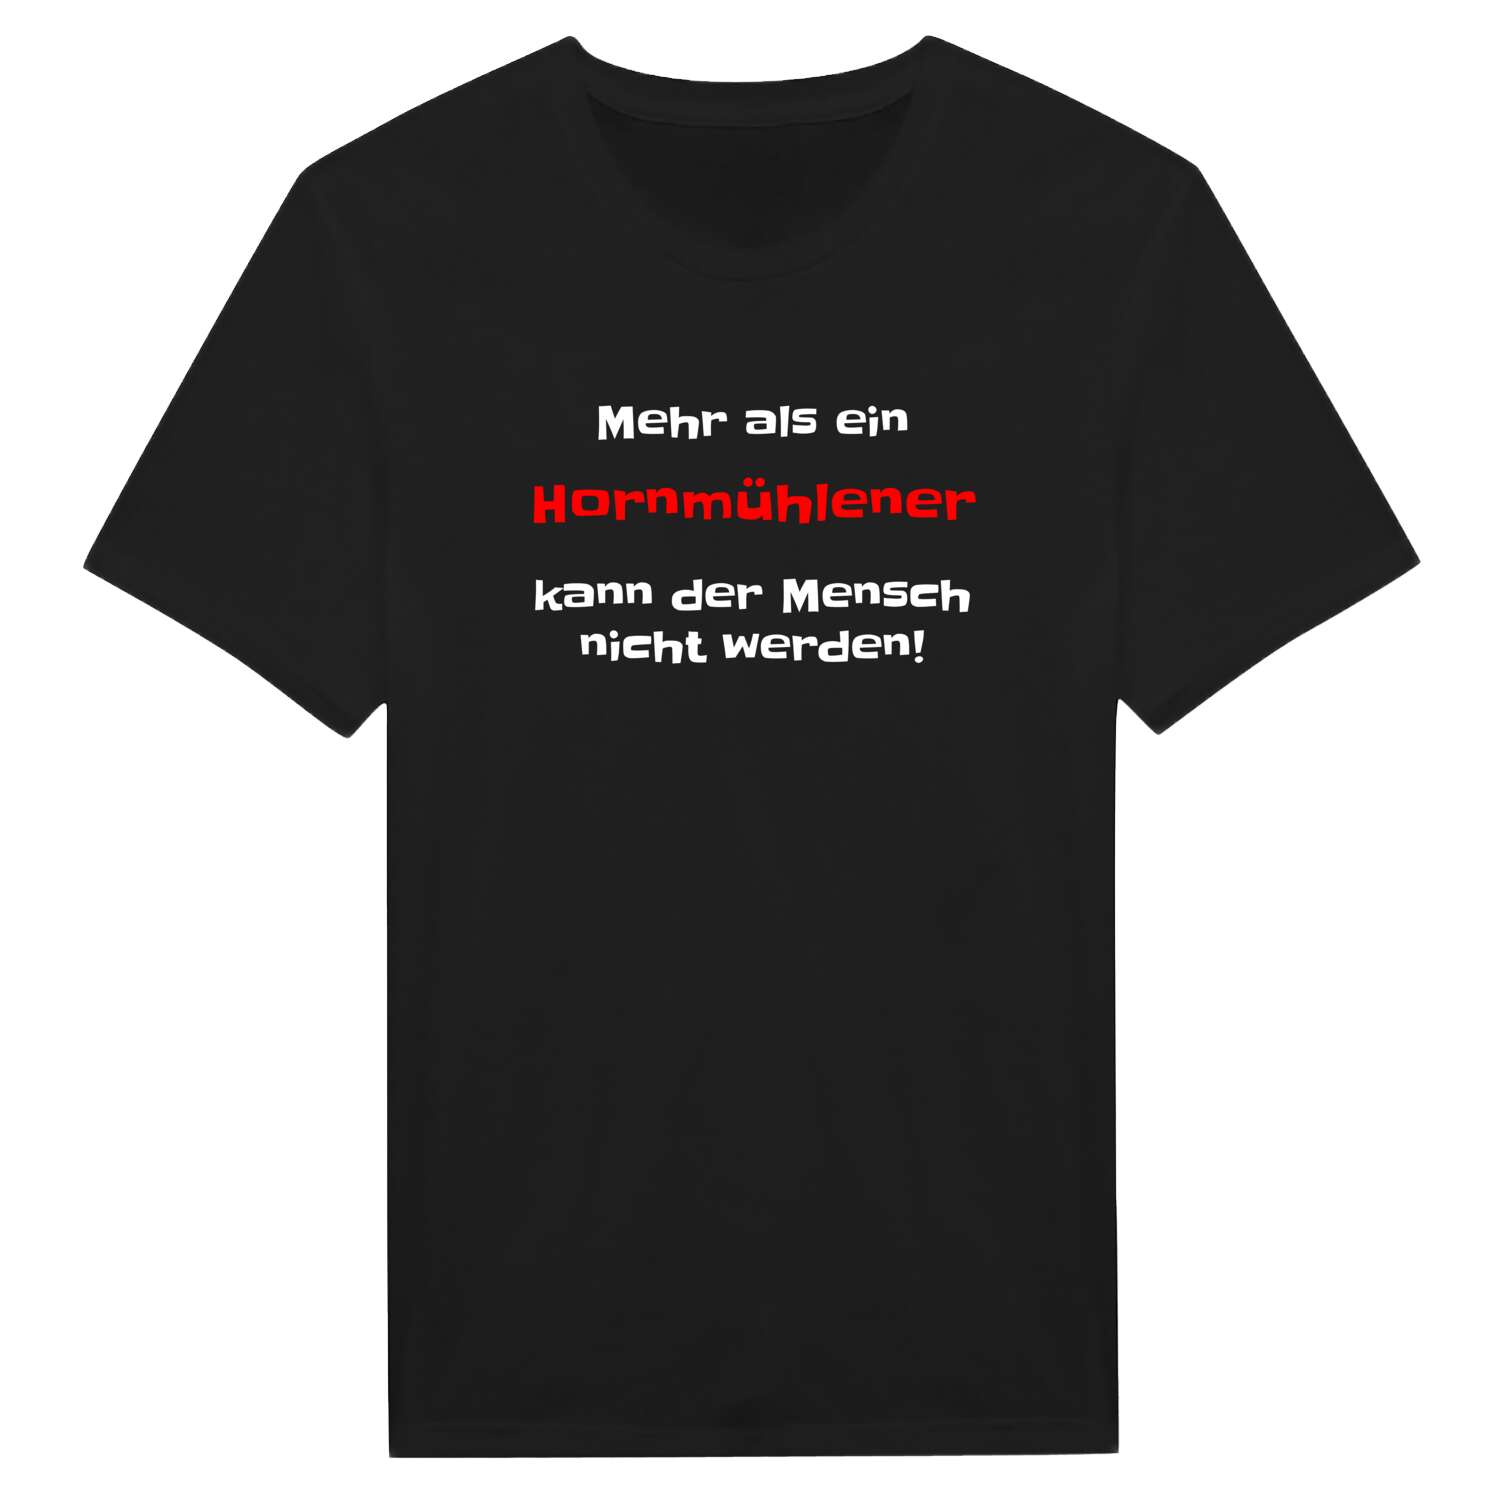 Hornmühle T-Shirt »Mehr als ein«